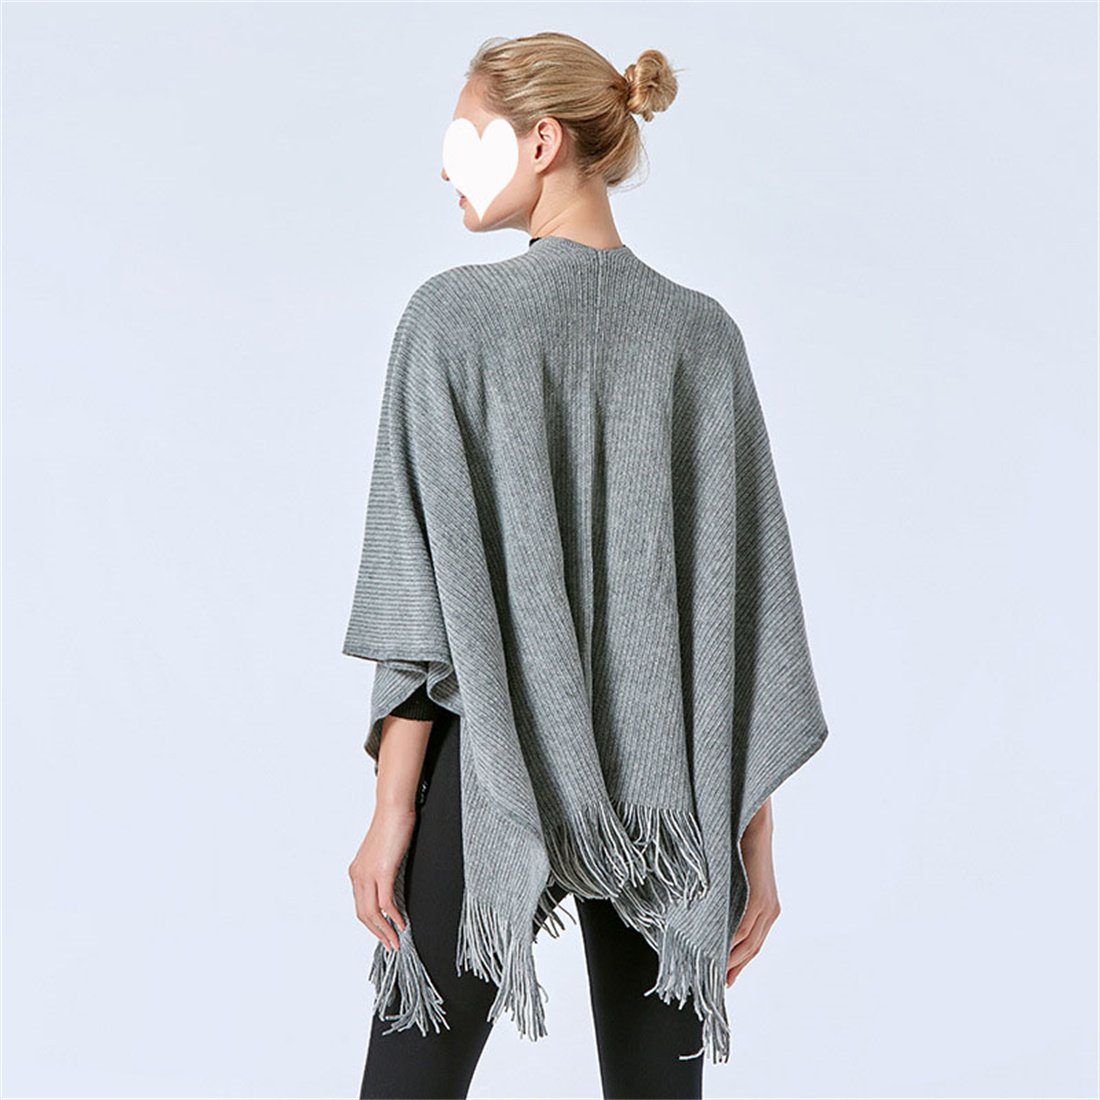 Mode Schal, DÖRÖY Umhang warme einfarbig Grau Modeschal Tasche Damen Winter Schal Retro